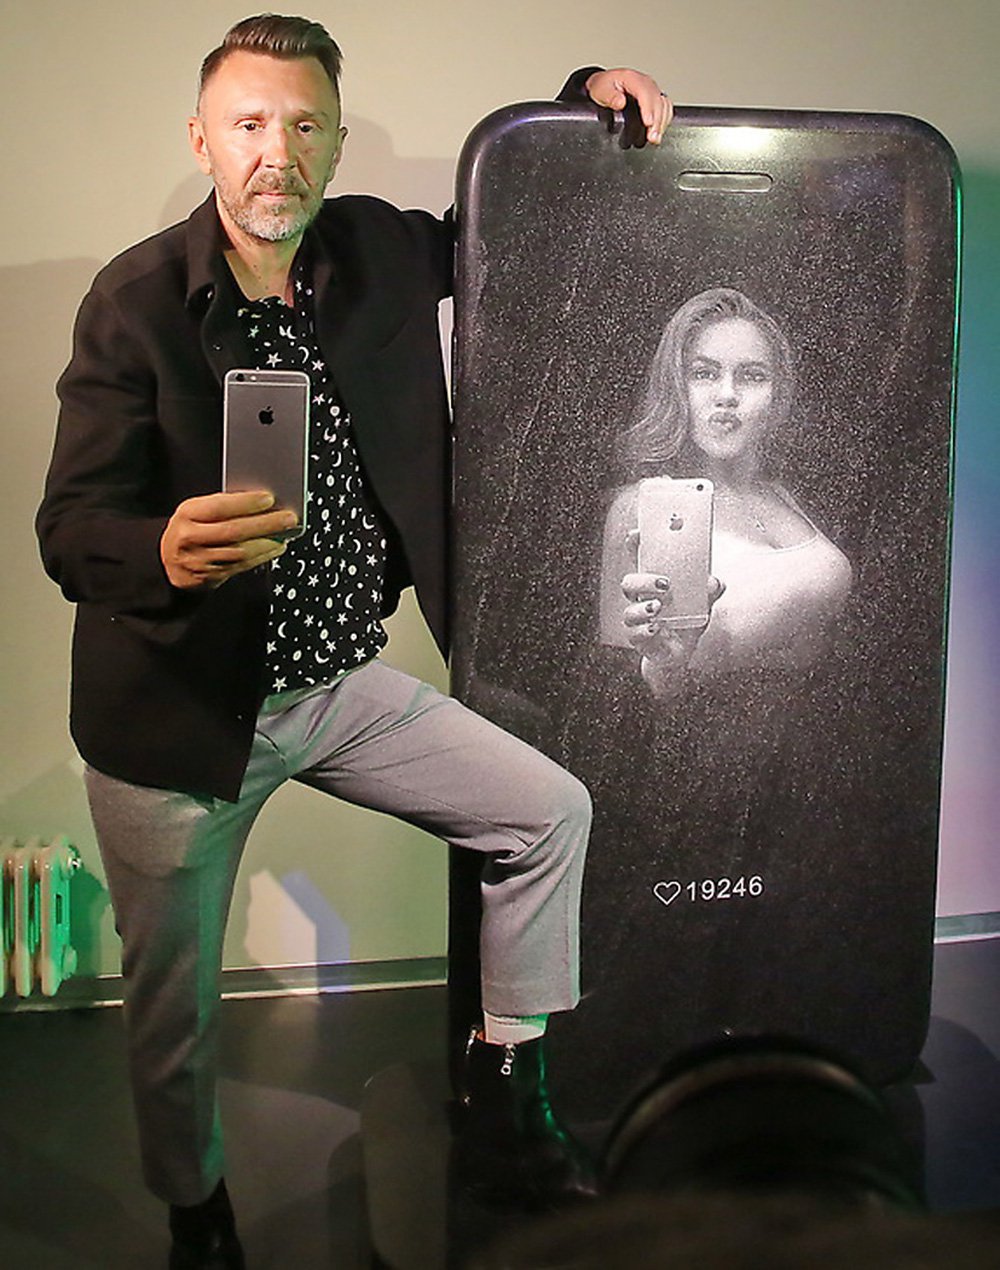 Сергей Шнуров рядом со своим арт-объектом «Айфон» / ММОМА